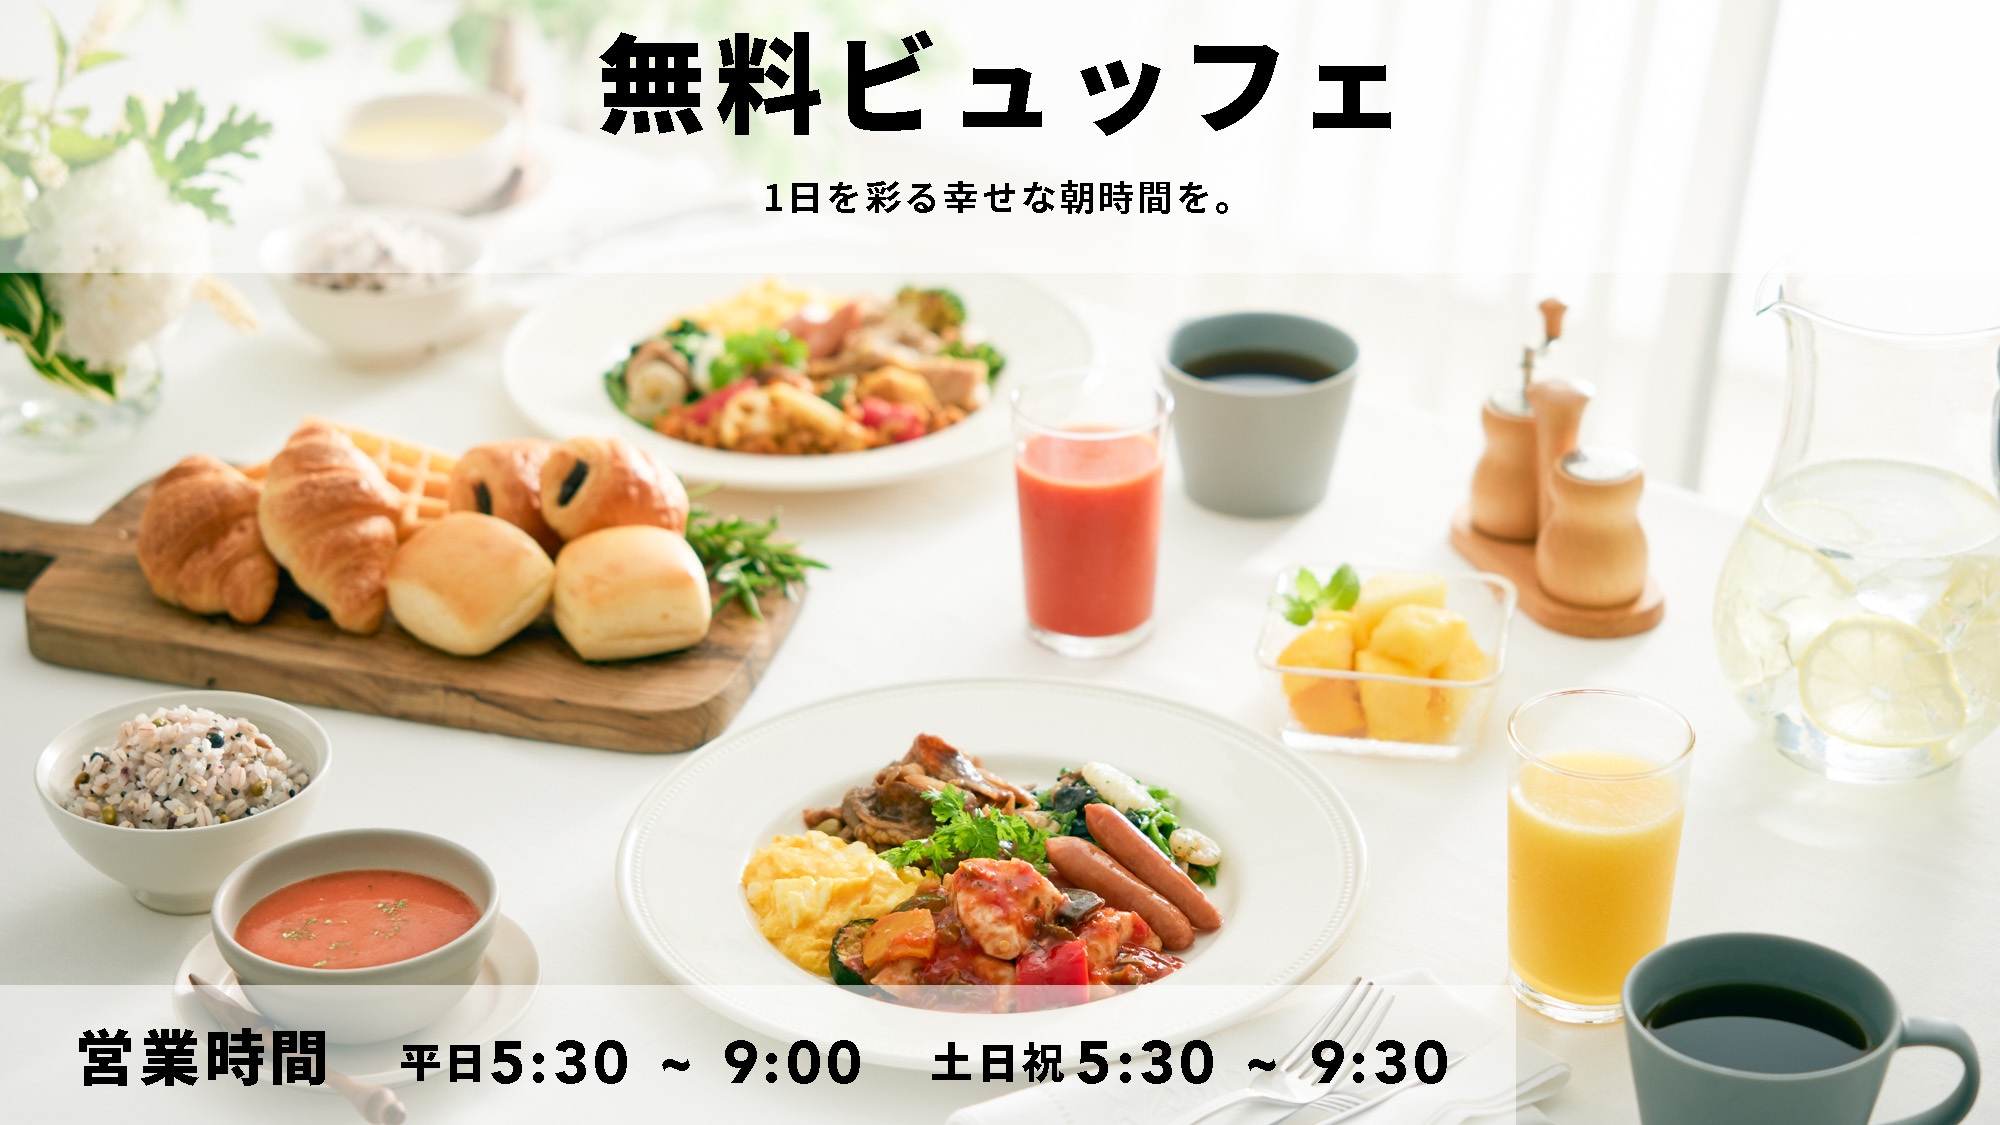 自由きままな Comfort stay ◆彩り豊かな朝食無料サービス◆